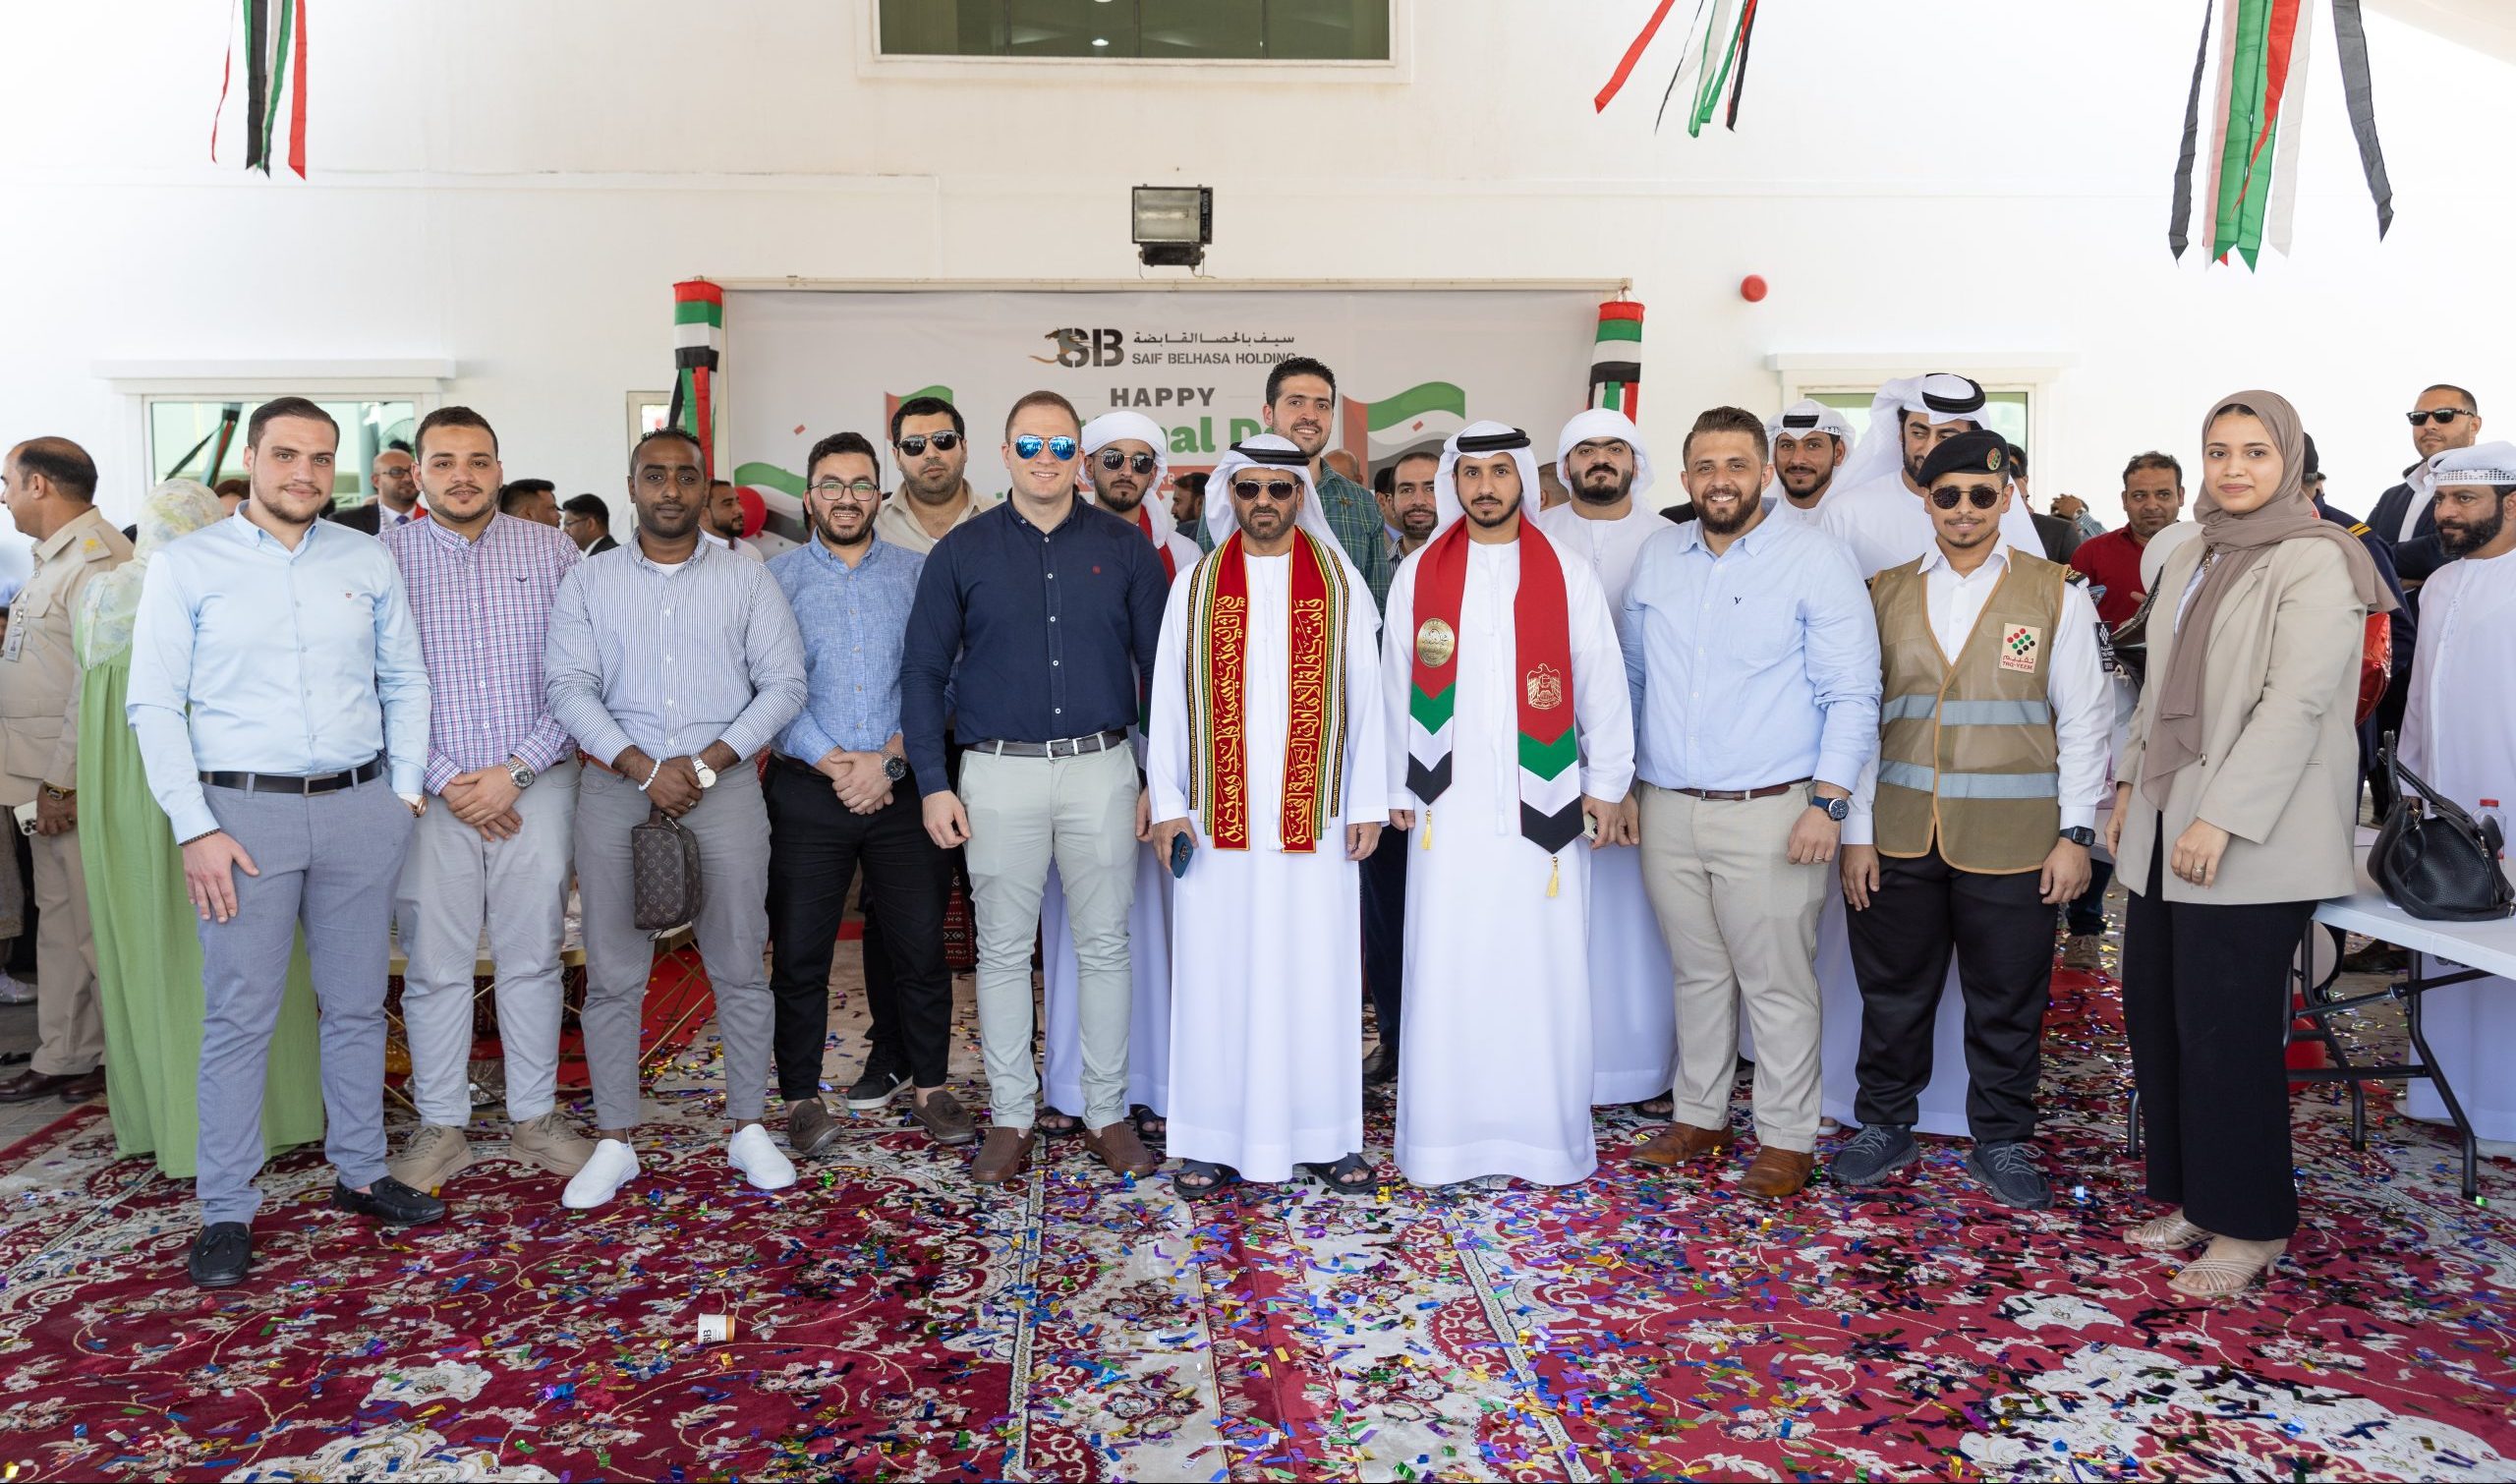 Saif Belhasa Holding Celebrating 51st UAE National Day